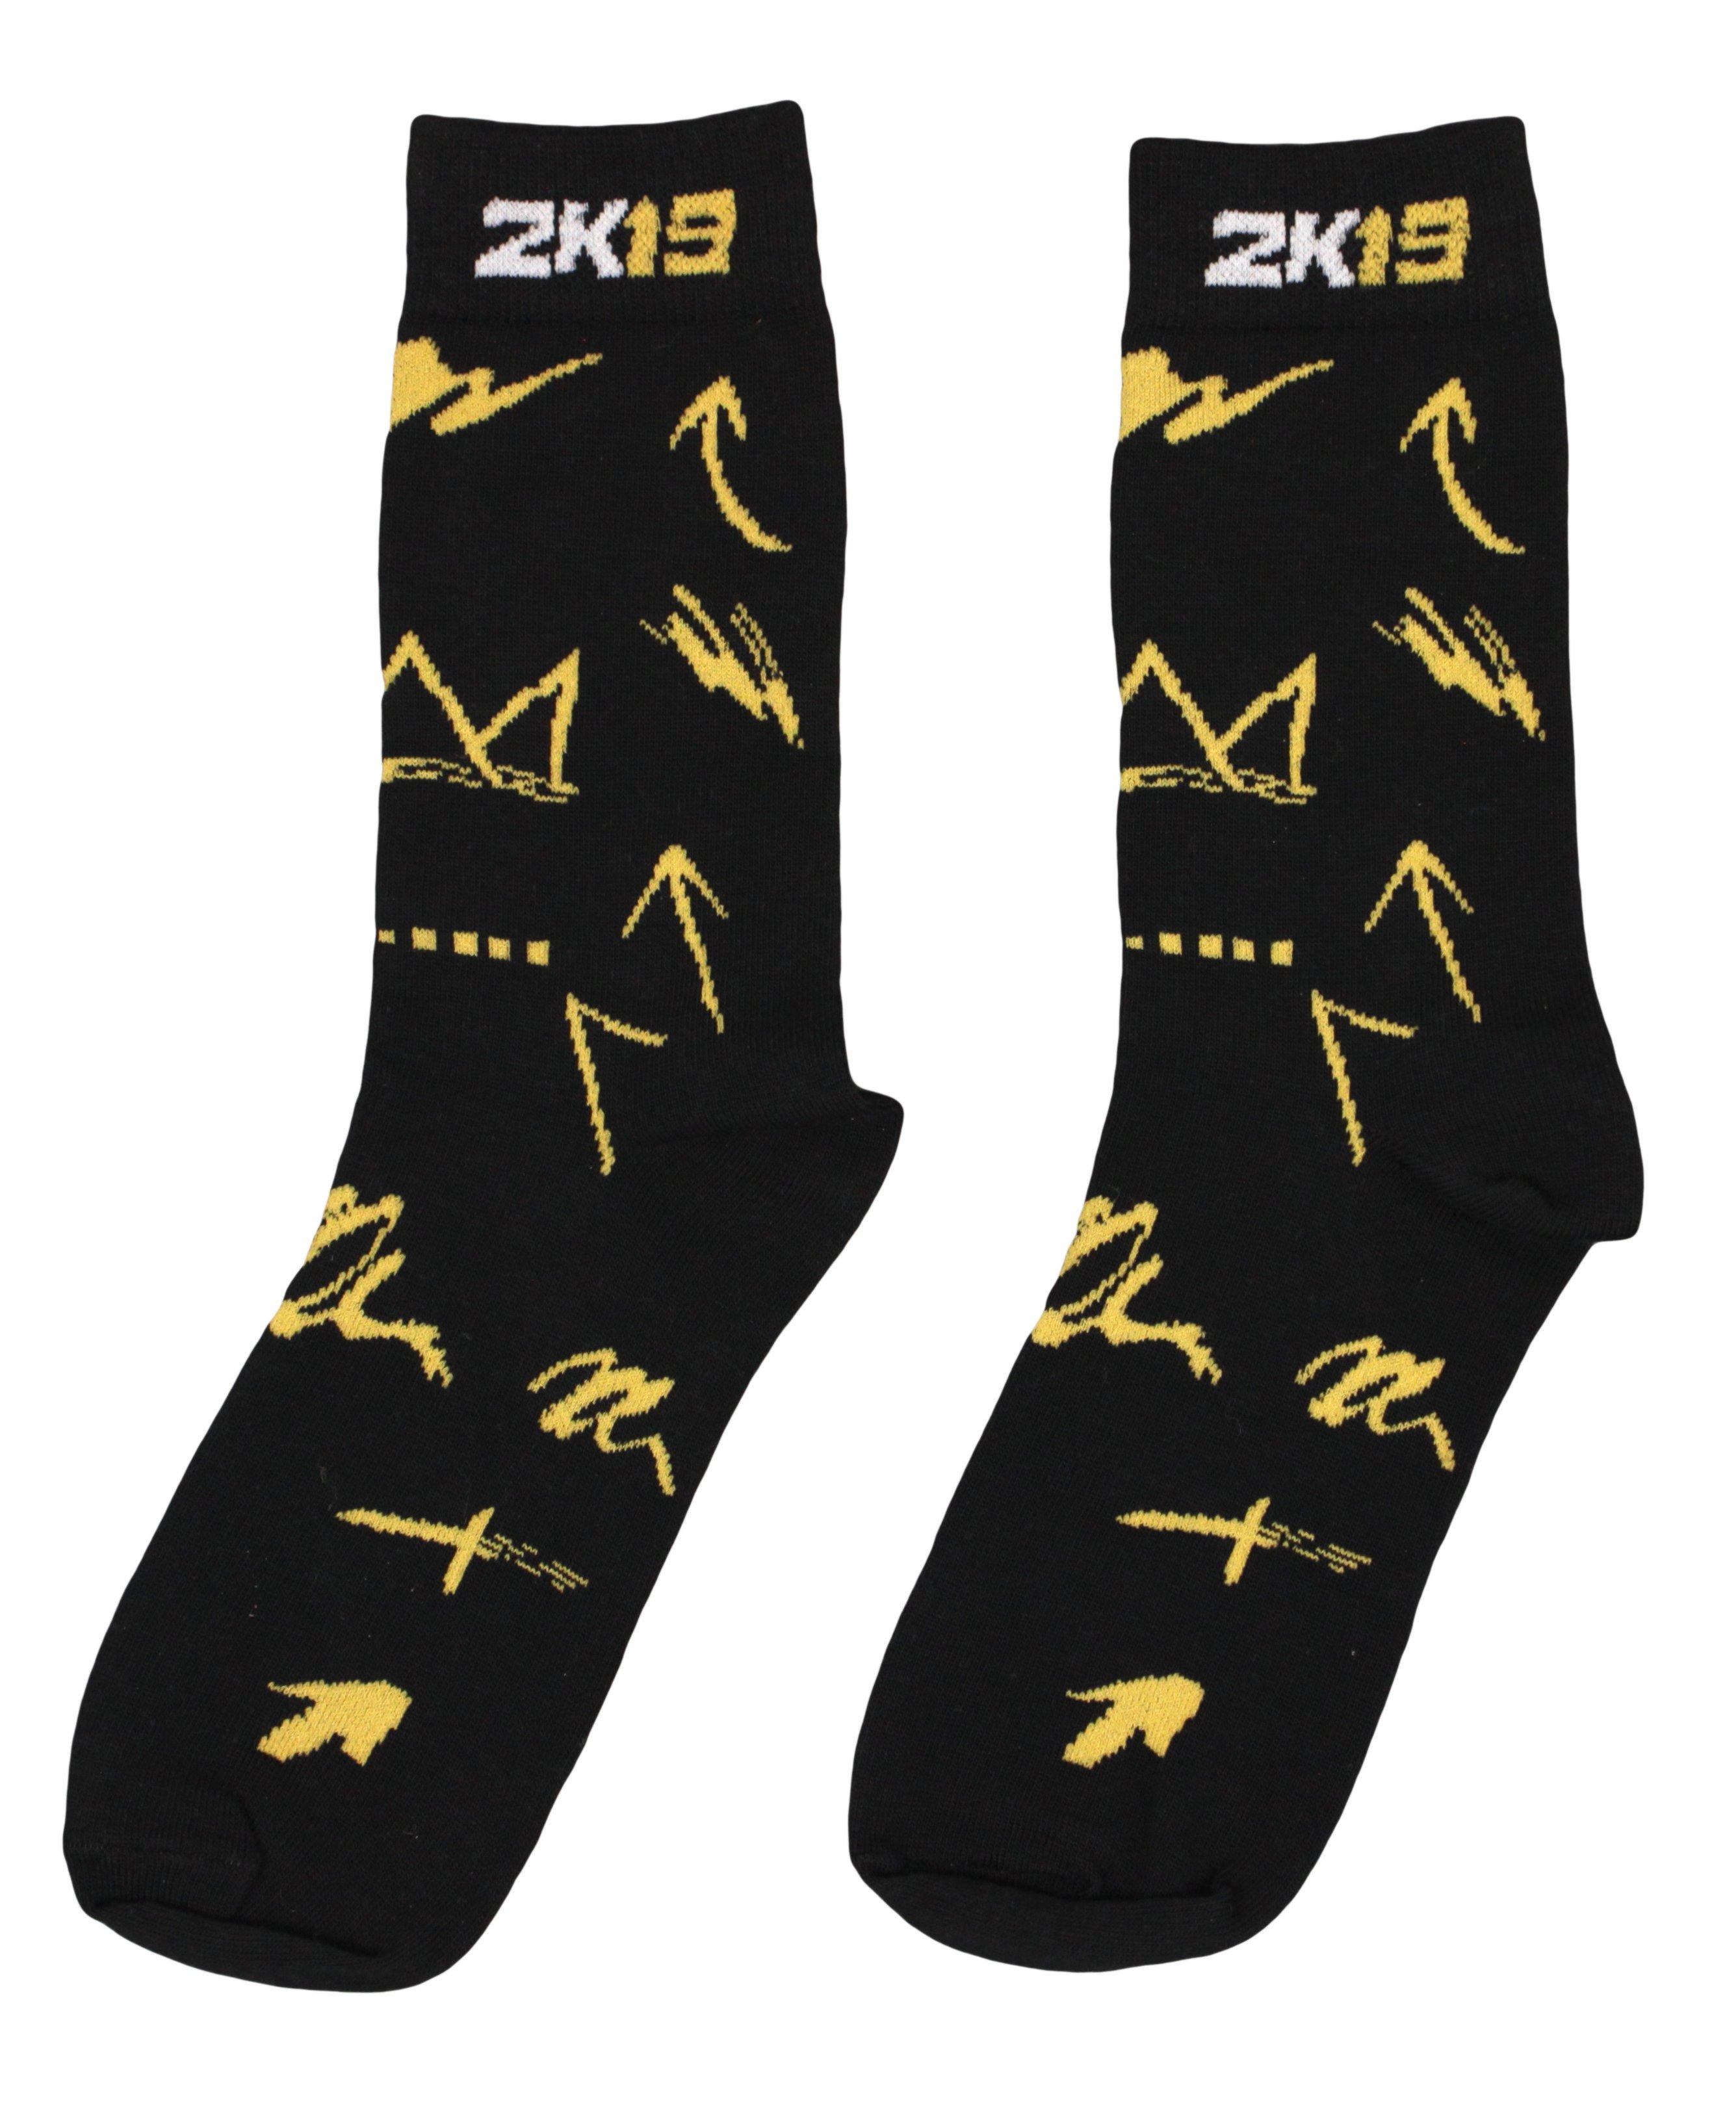 elite socks 2k19